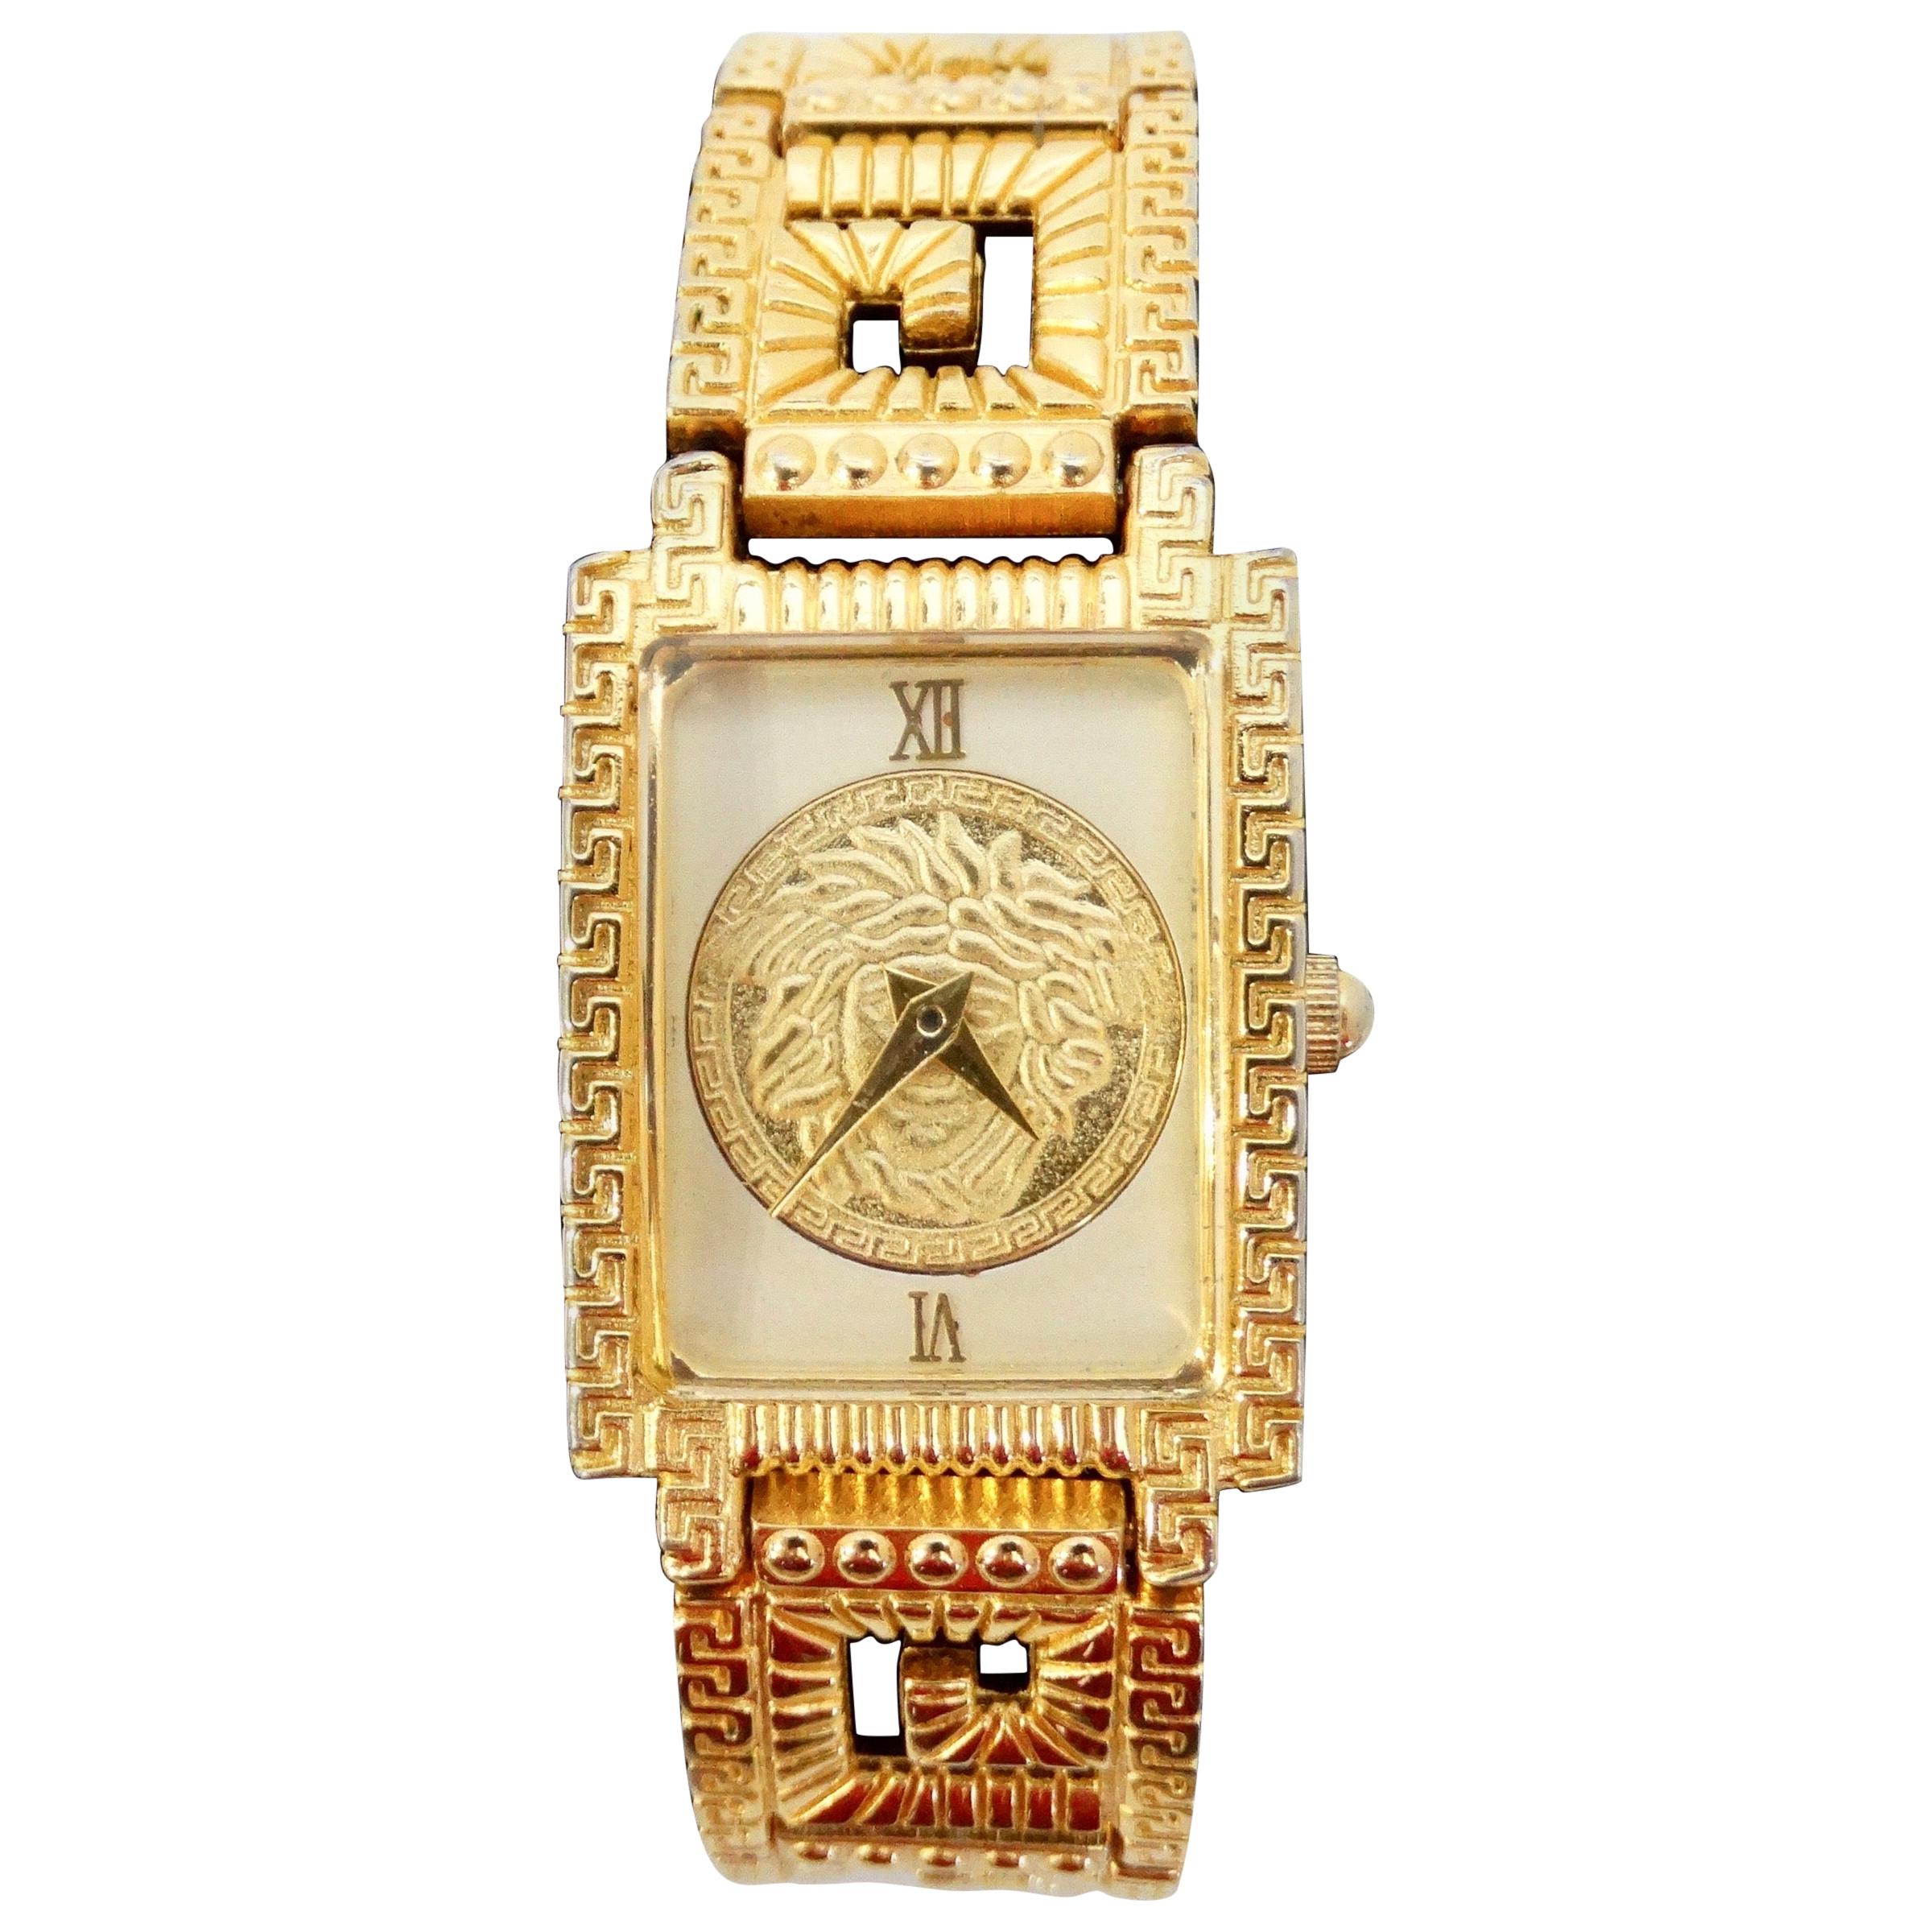 Gianni Versace 1990s Greek Key Wrist Watch